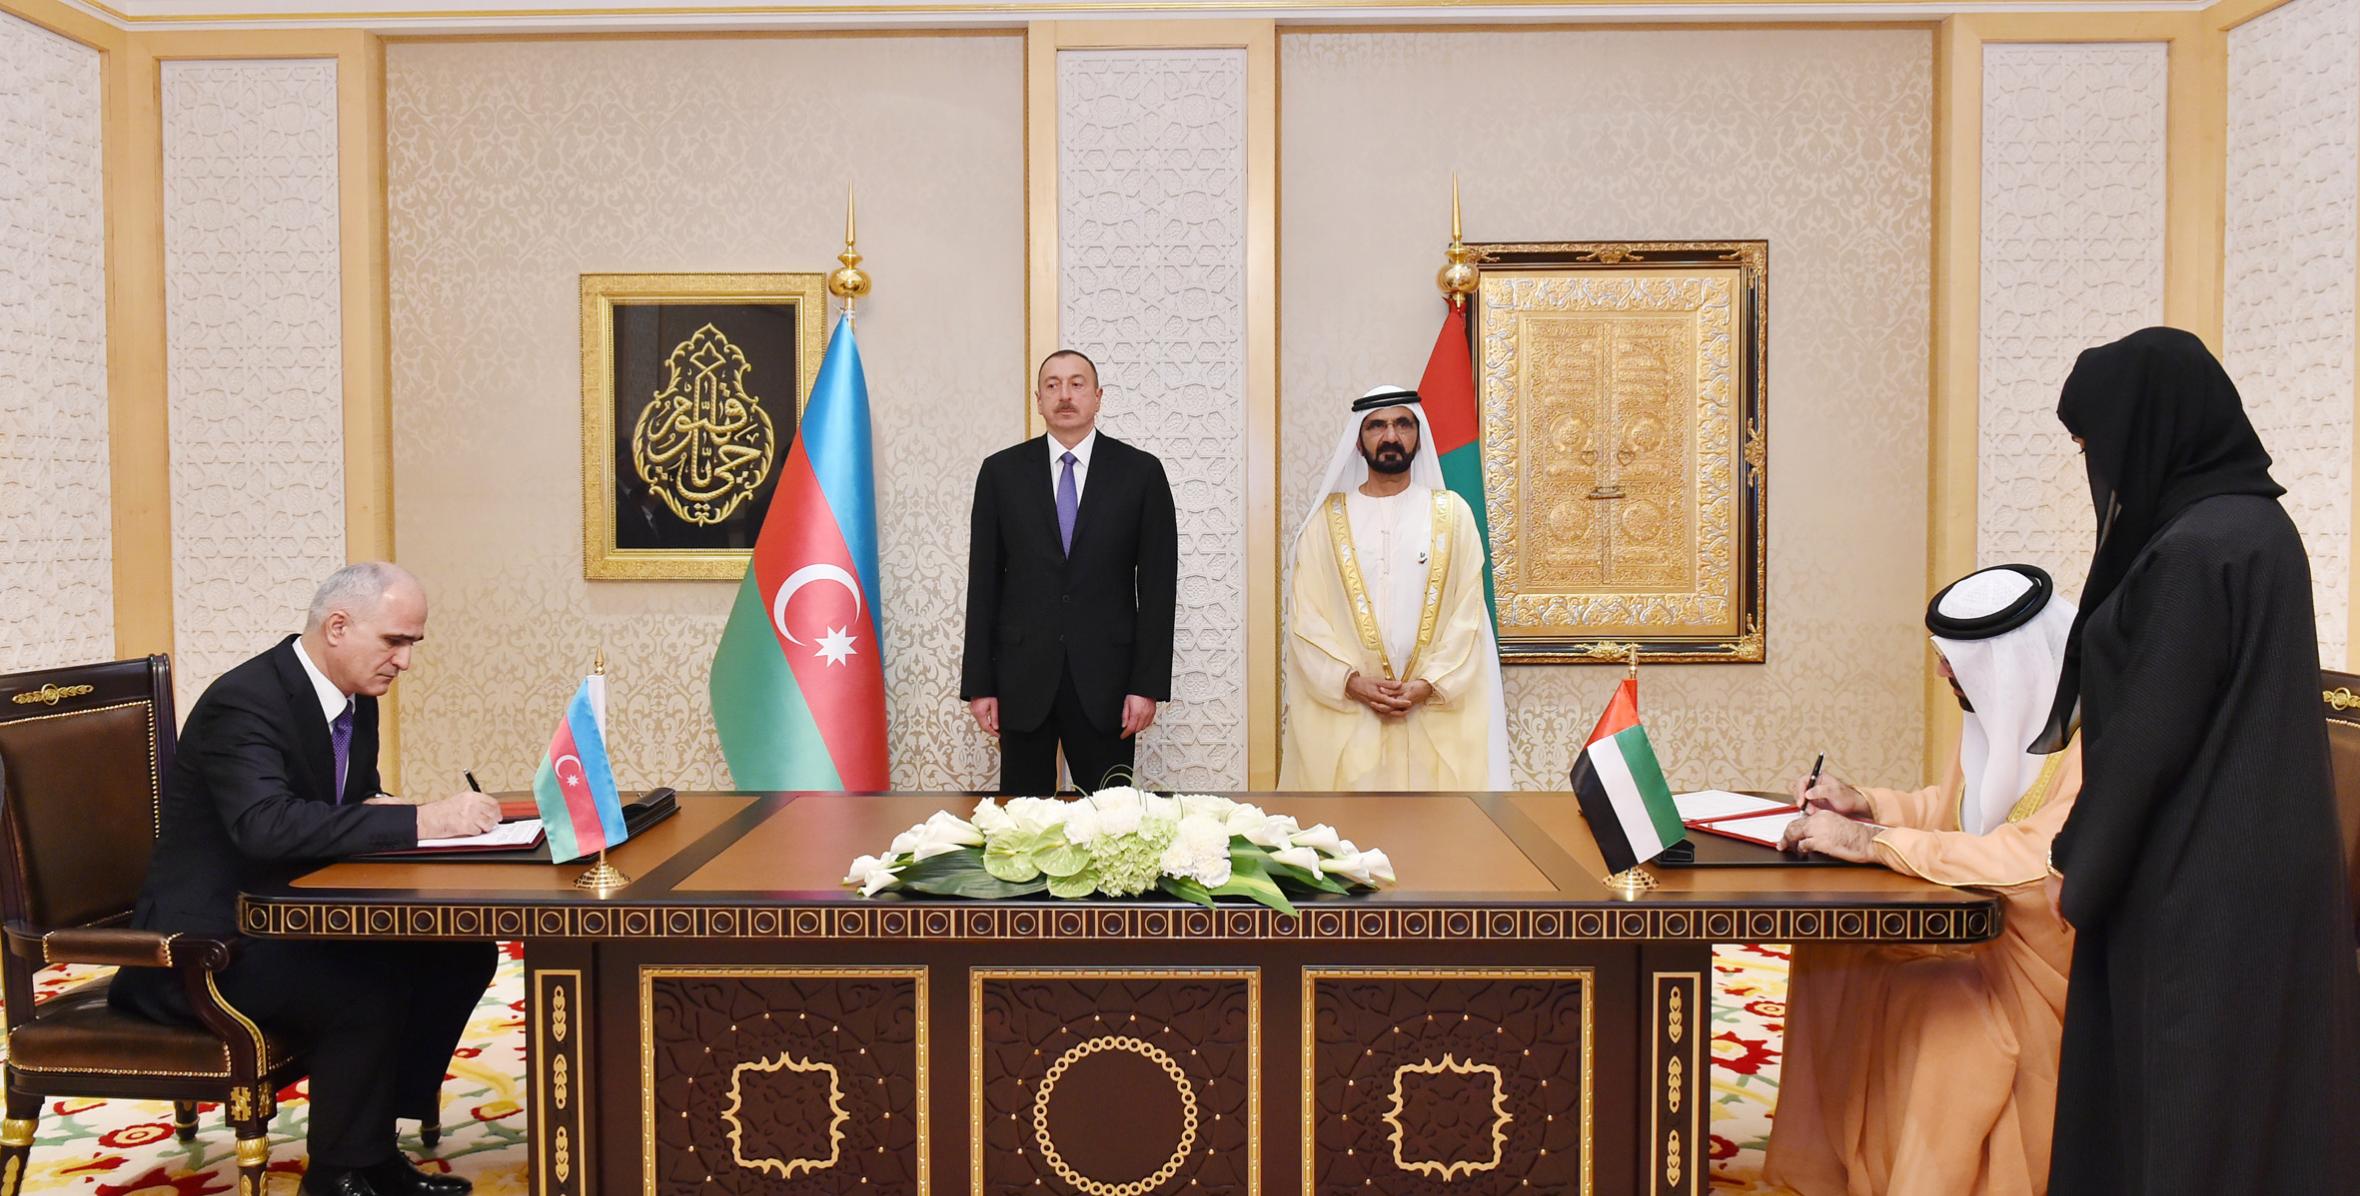 Состоялась церемония подписания документов между Азербайджанской Республикой и Объединенными Арабскими Эмиратами